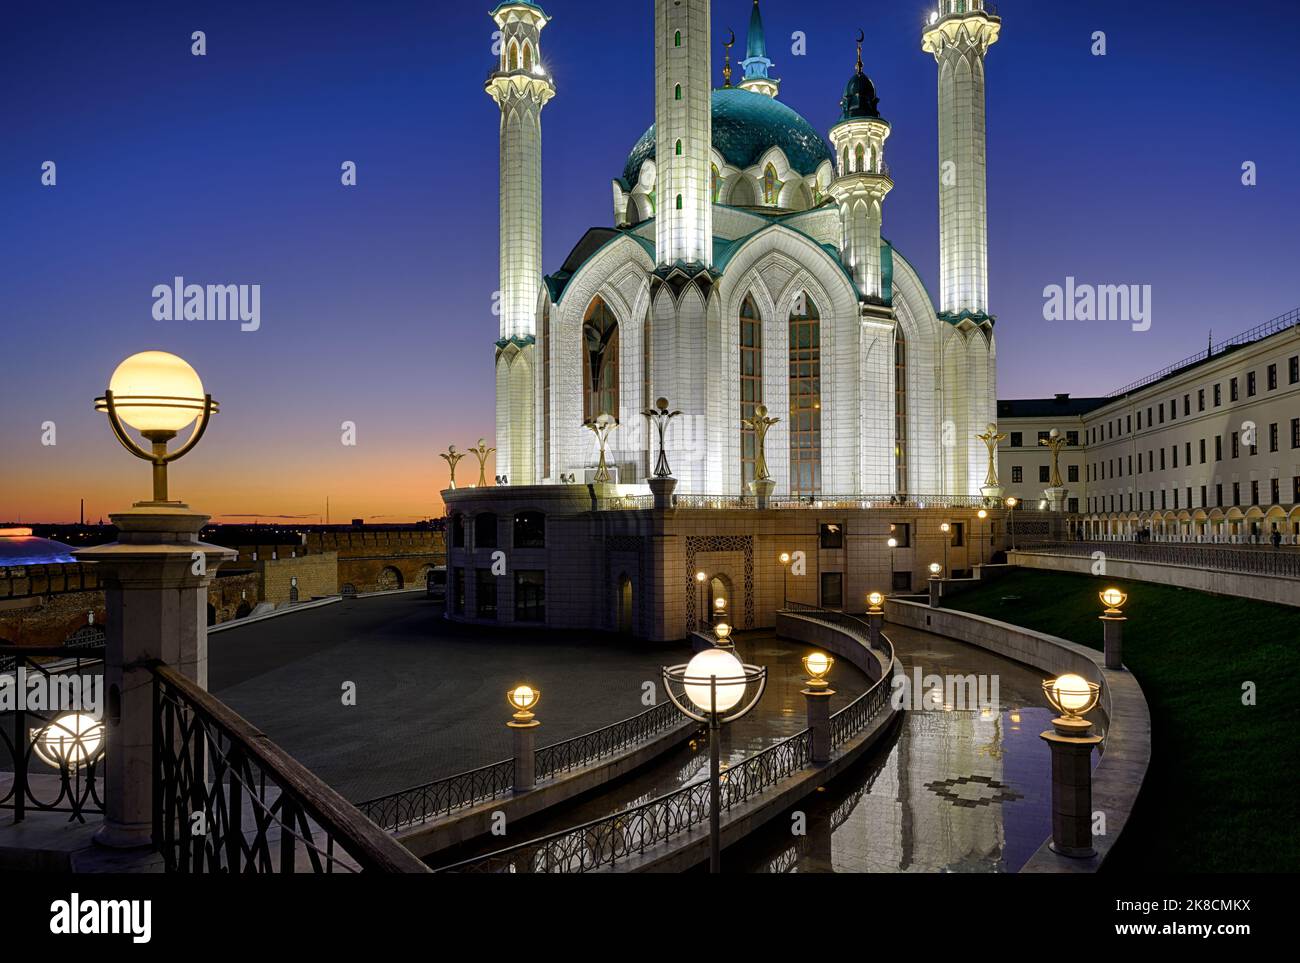 Le Kremlin de Kazan la nuit, Tatarstan, Russie. Paysage de la mosquée de Kul Sharif, point de repère de Kazan. Panorama de l'architecture musulmane et des lampes dans la ville de Kazan ce Banque D'Images